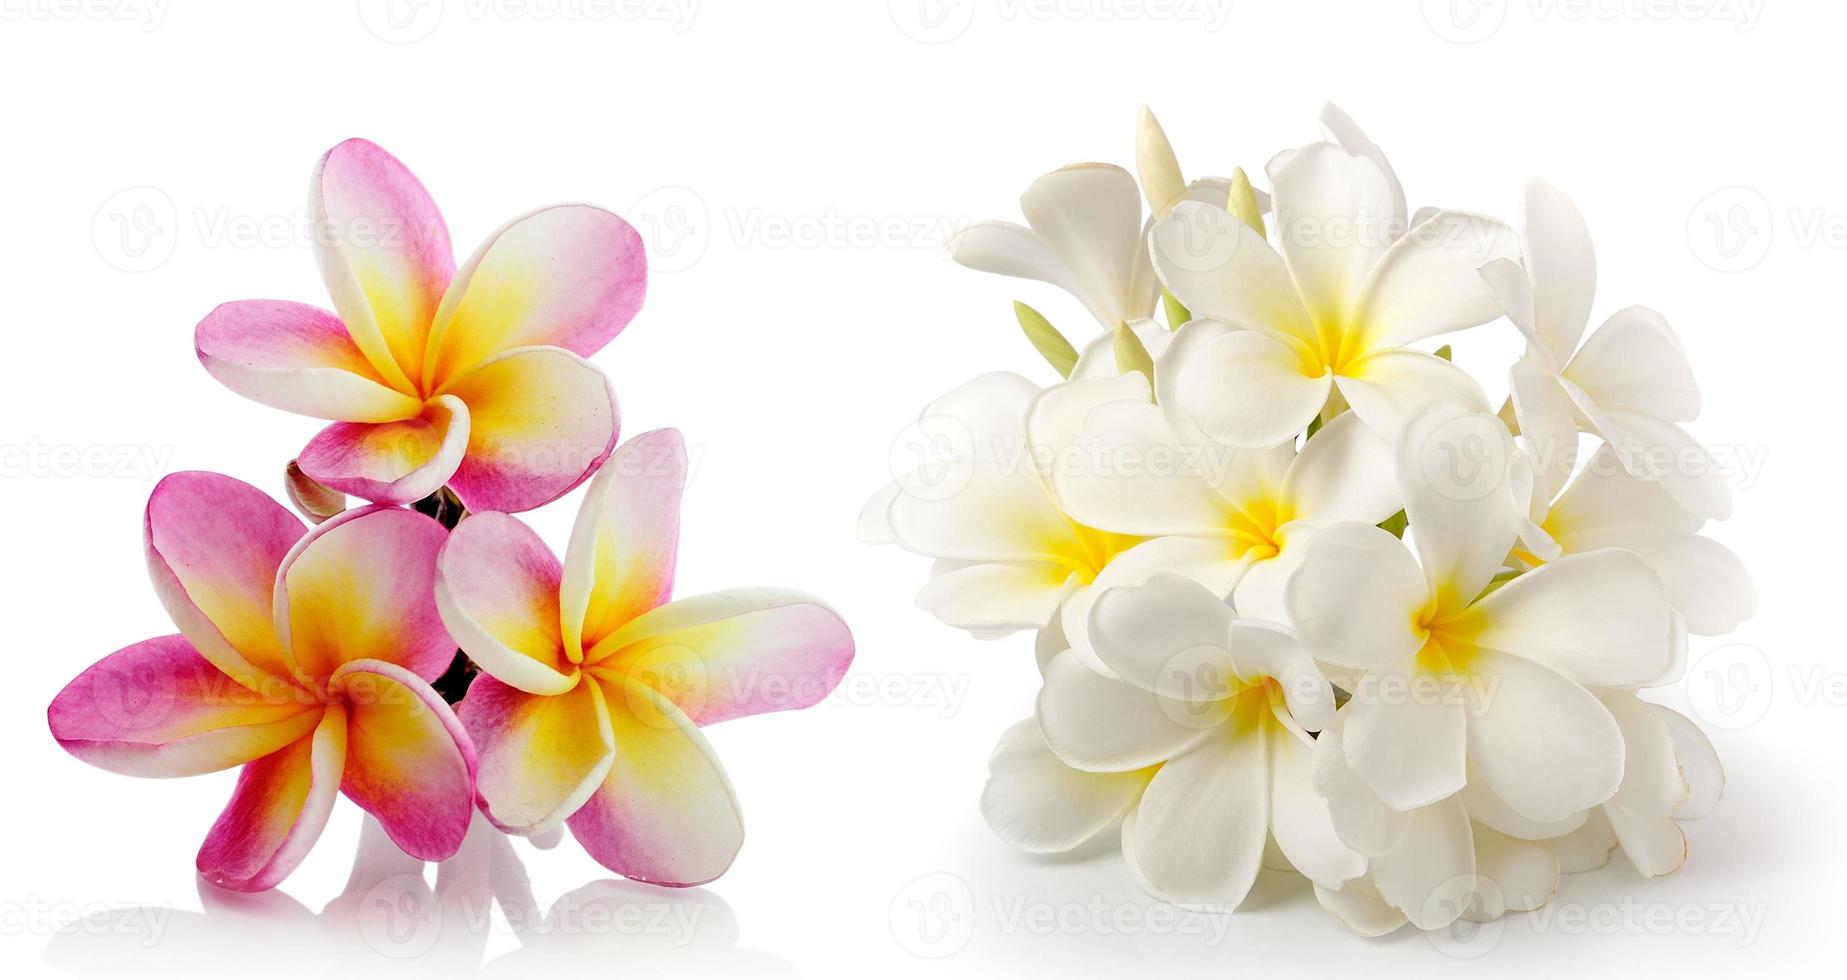 flor de frangipani isolada em branco sobre fundo branco foto